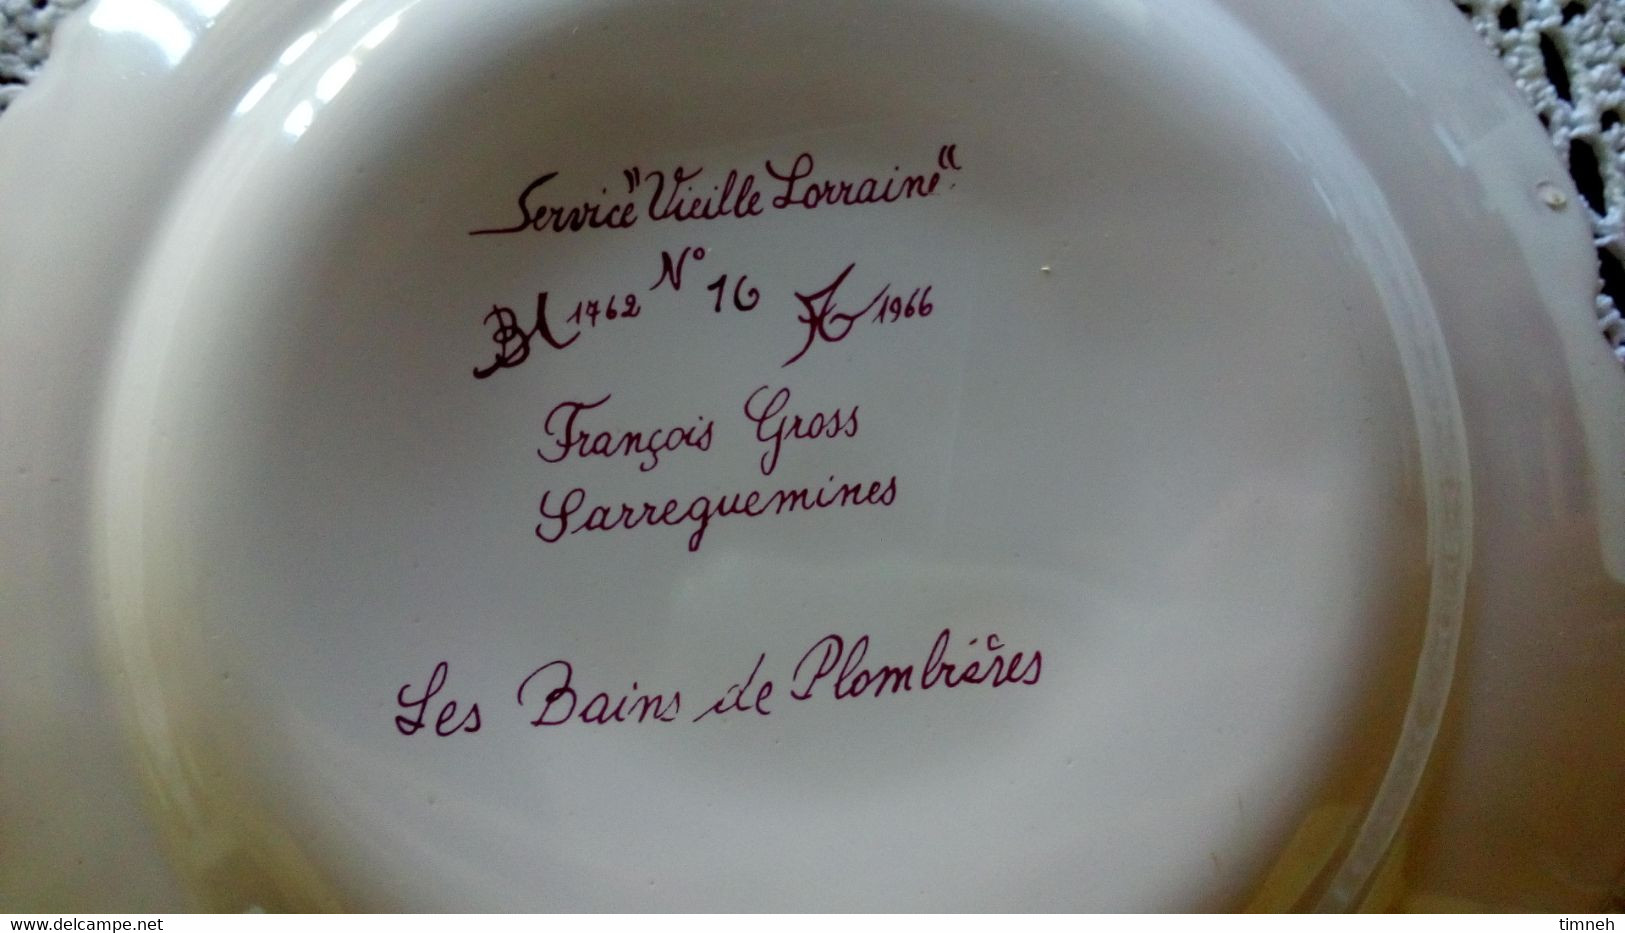 François GROSS - Sarreguemines - Assiette Dessert - LES BAINS DE PLOMBIERES Service Vieille Lorraine - 1966 Bicentenaire - Sarreguemines (FRA)